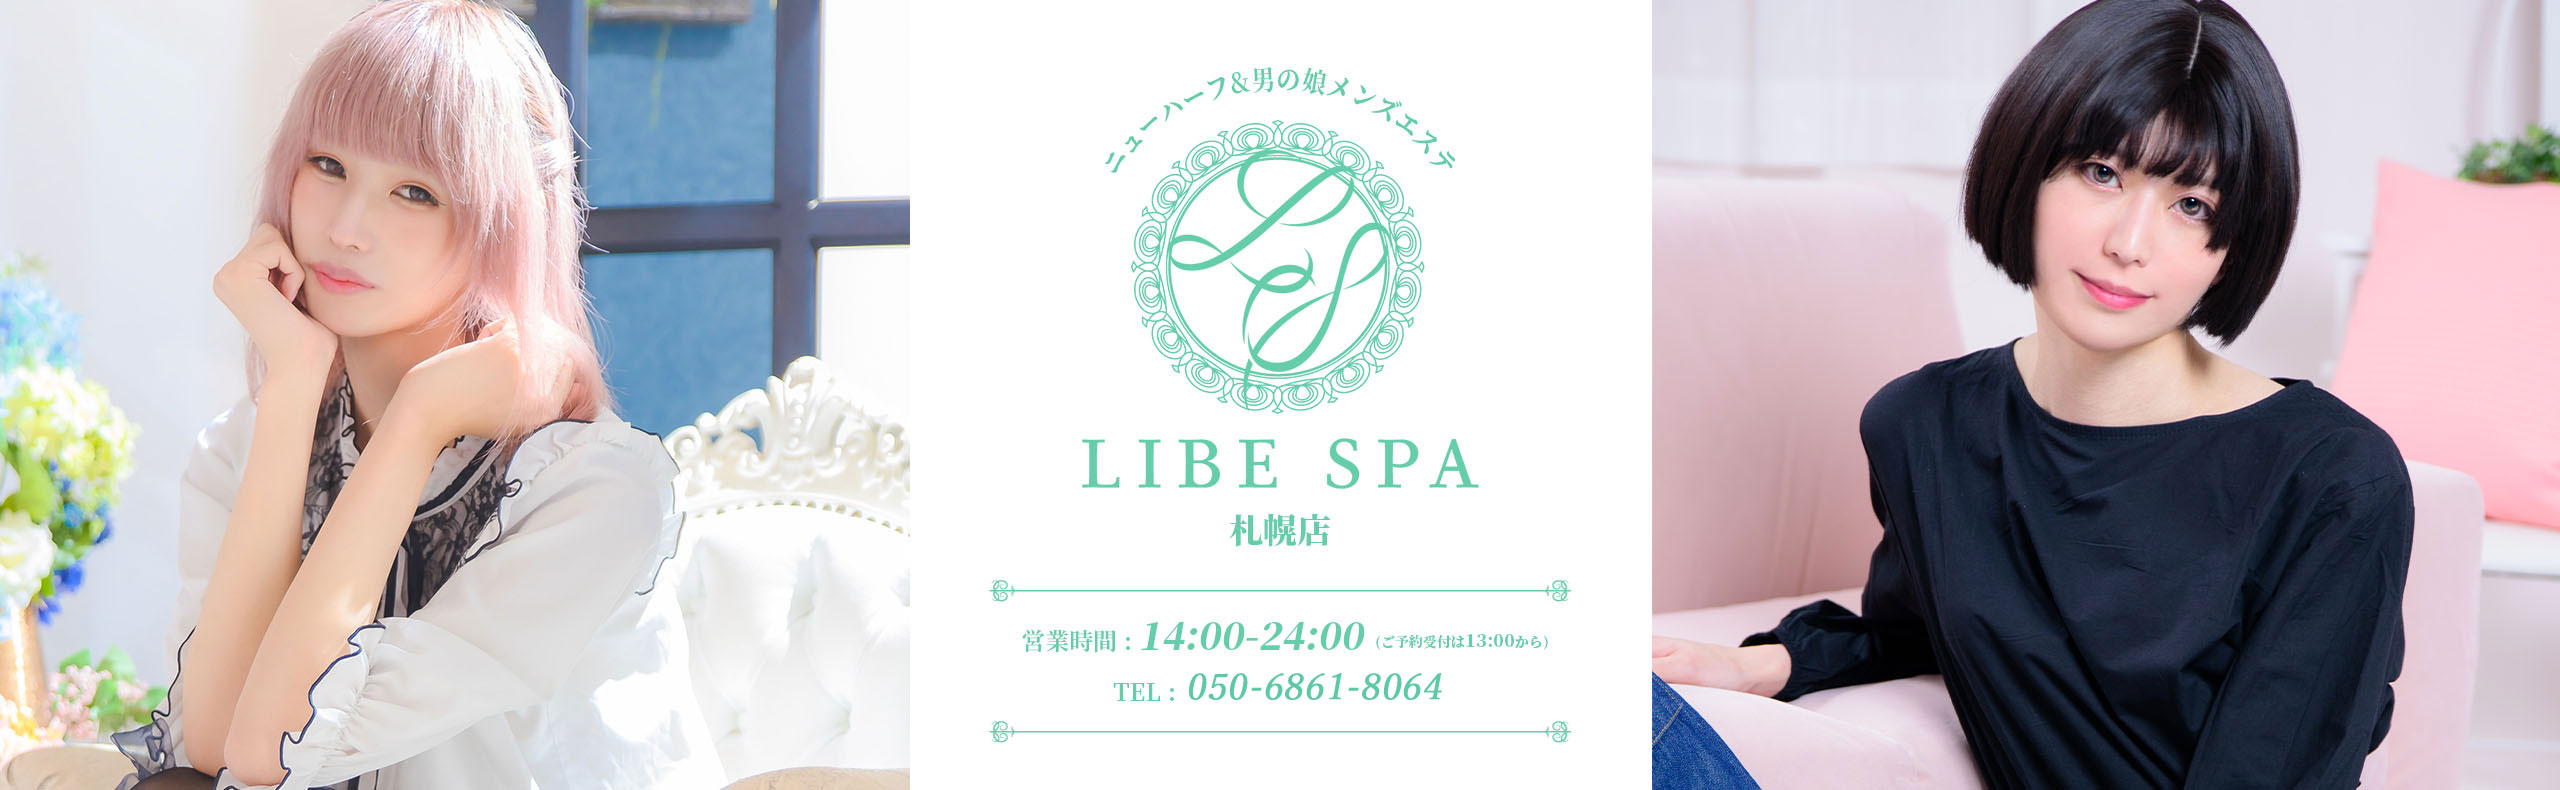 LIBE SPA 札幌店メインビジュアル